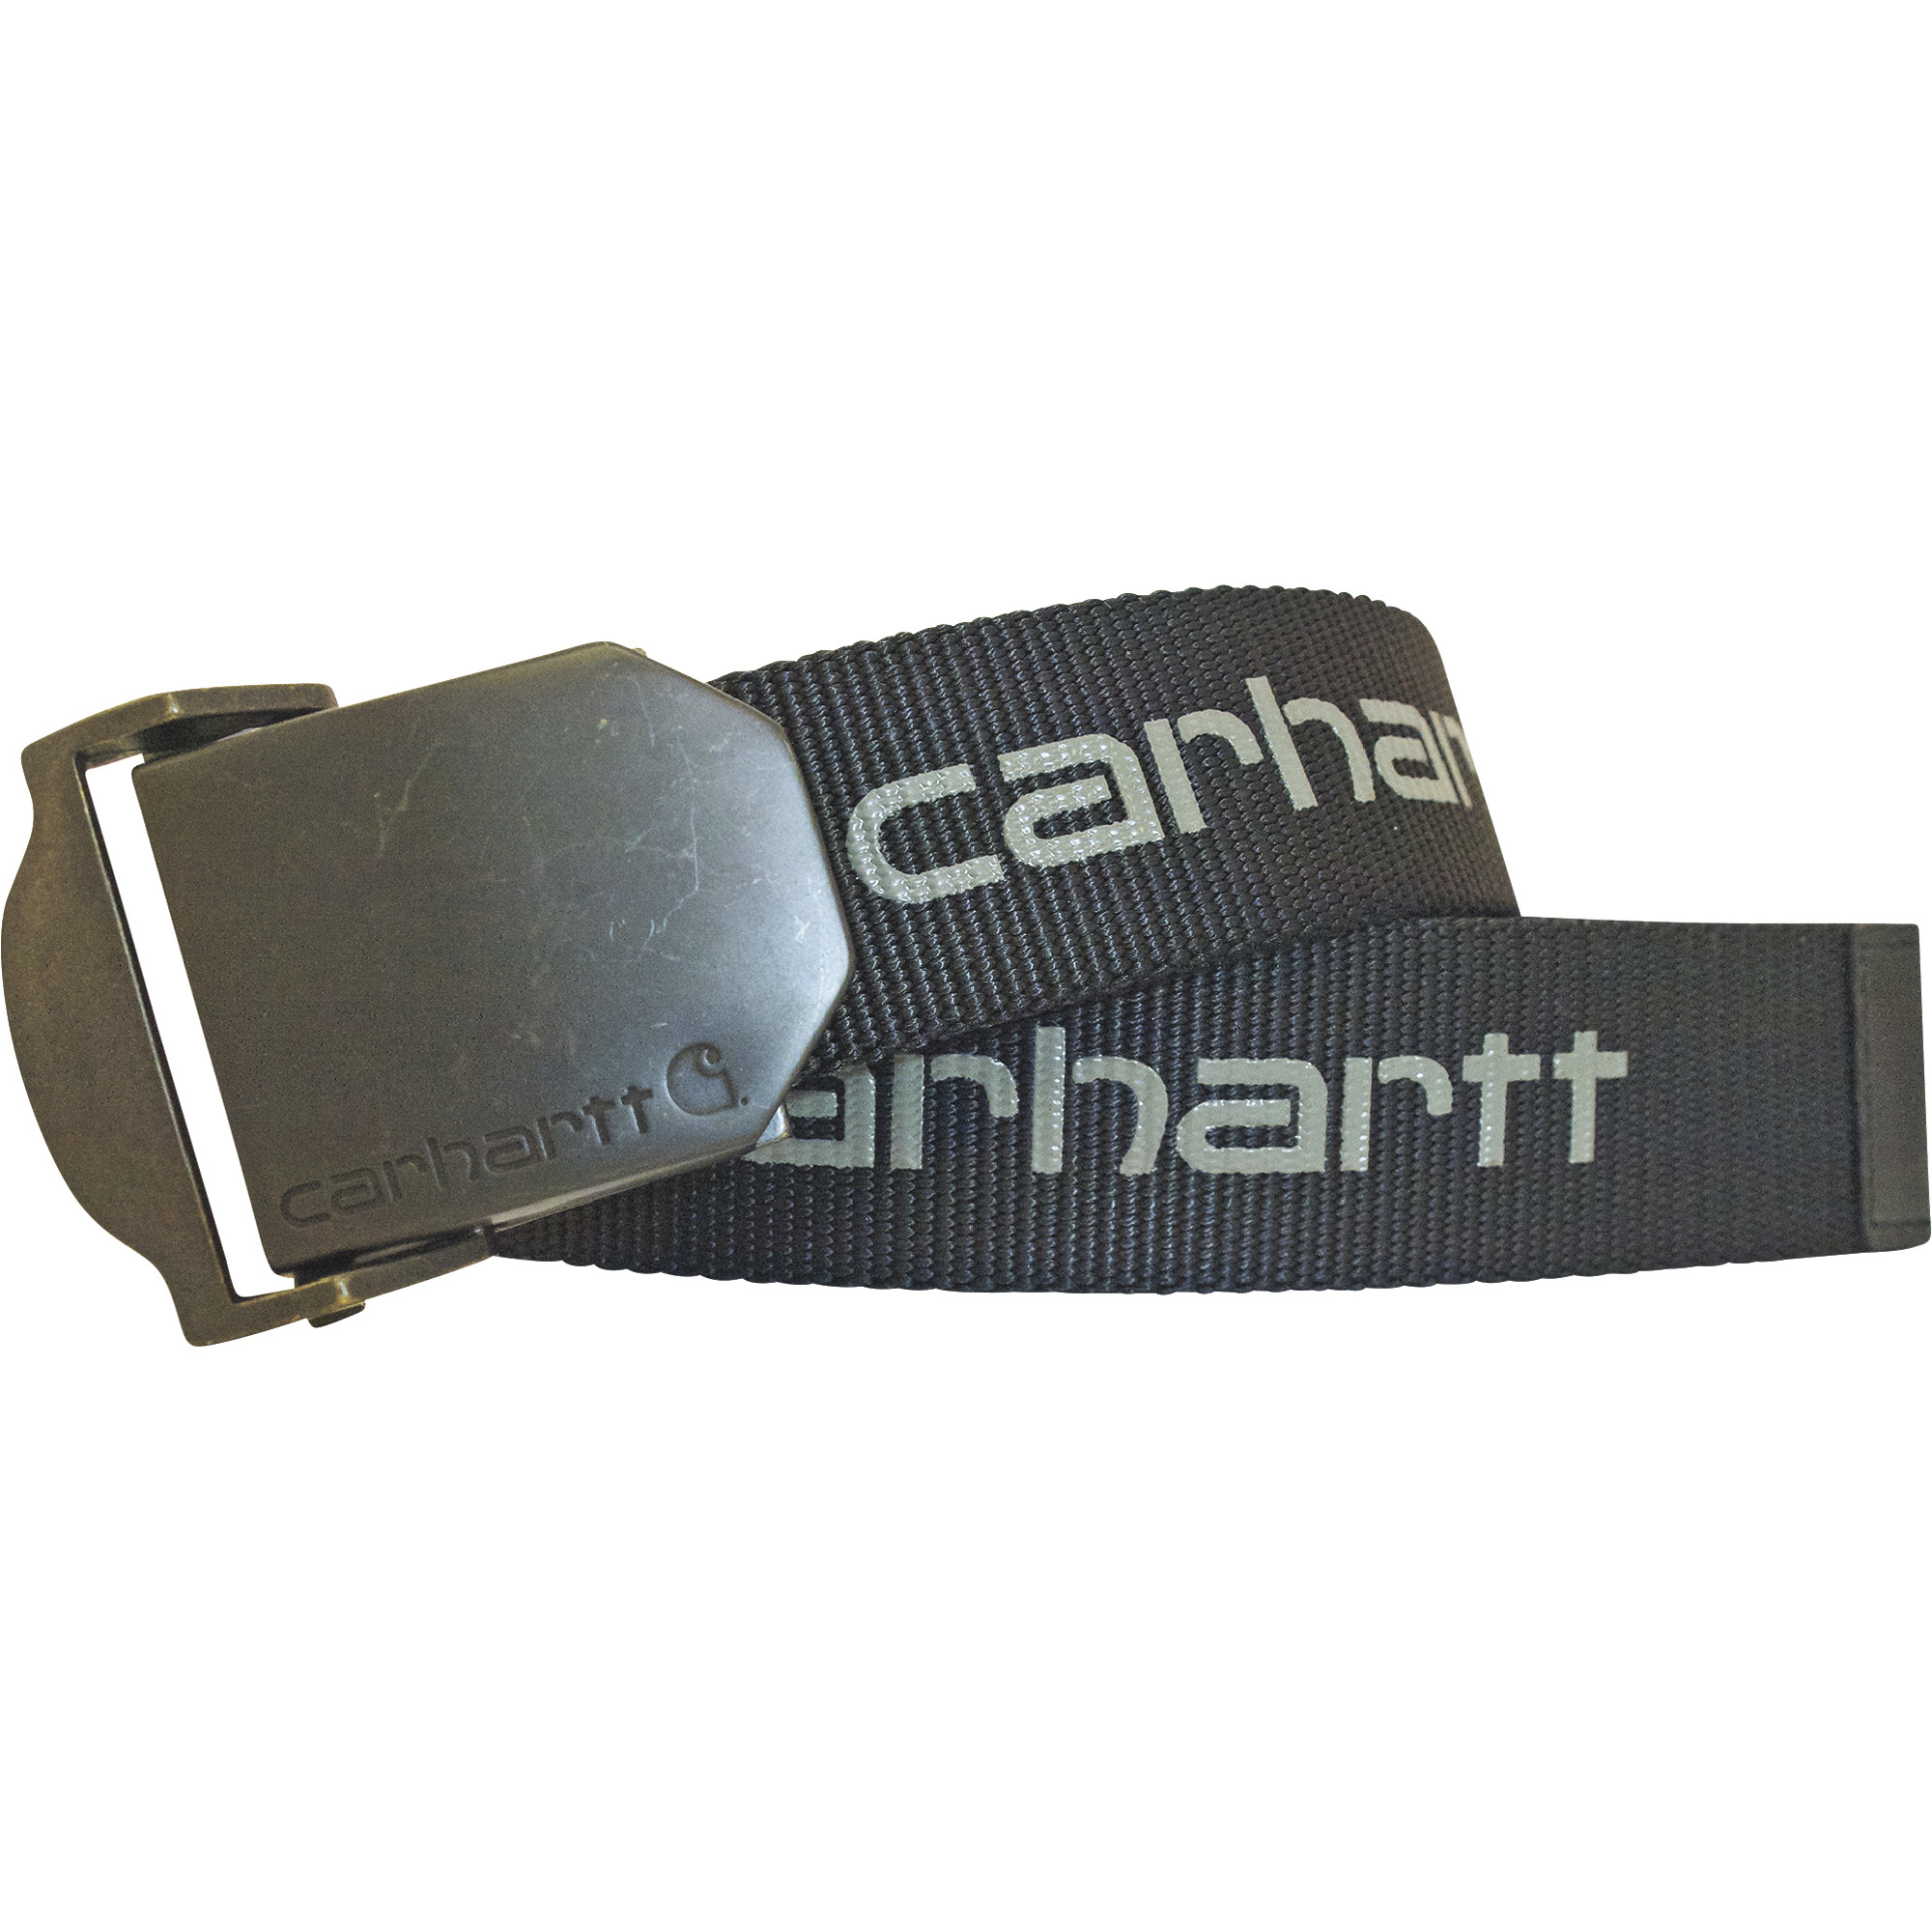 Carhartt Men's Web Belt â Gray, XL, Model CH-2260-027-XL